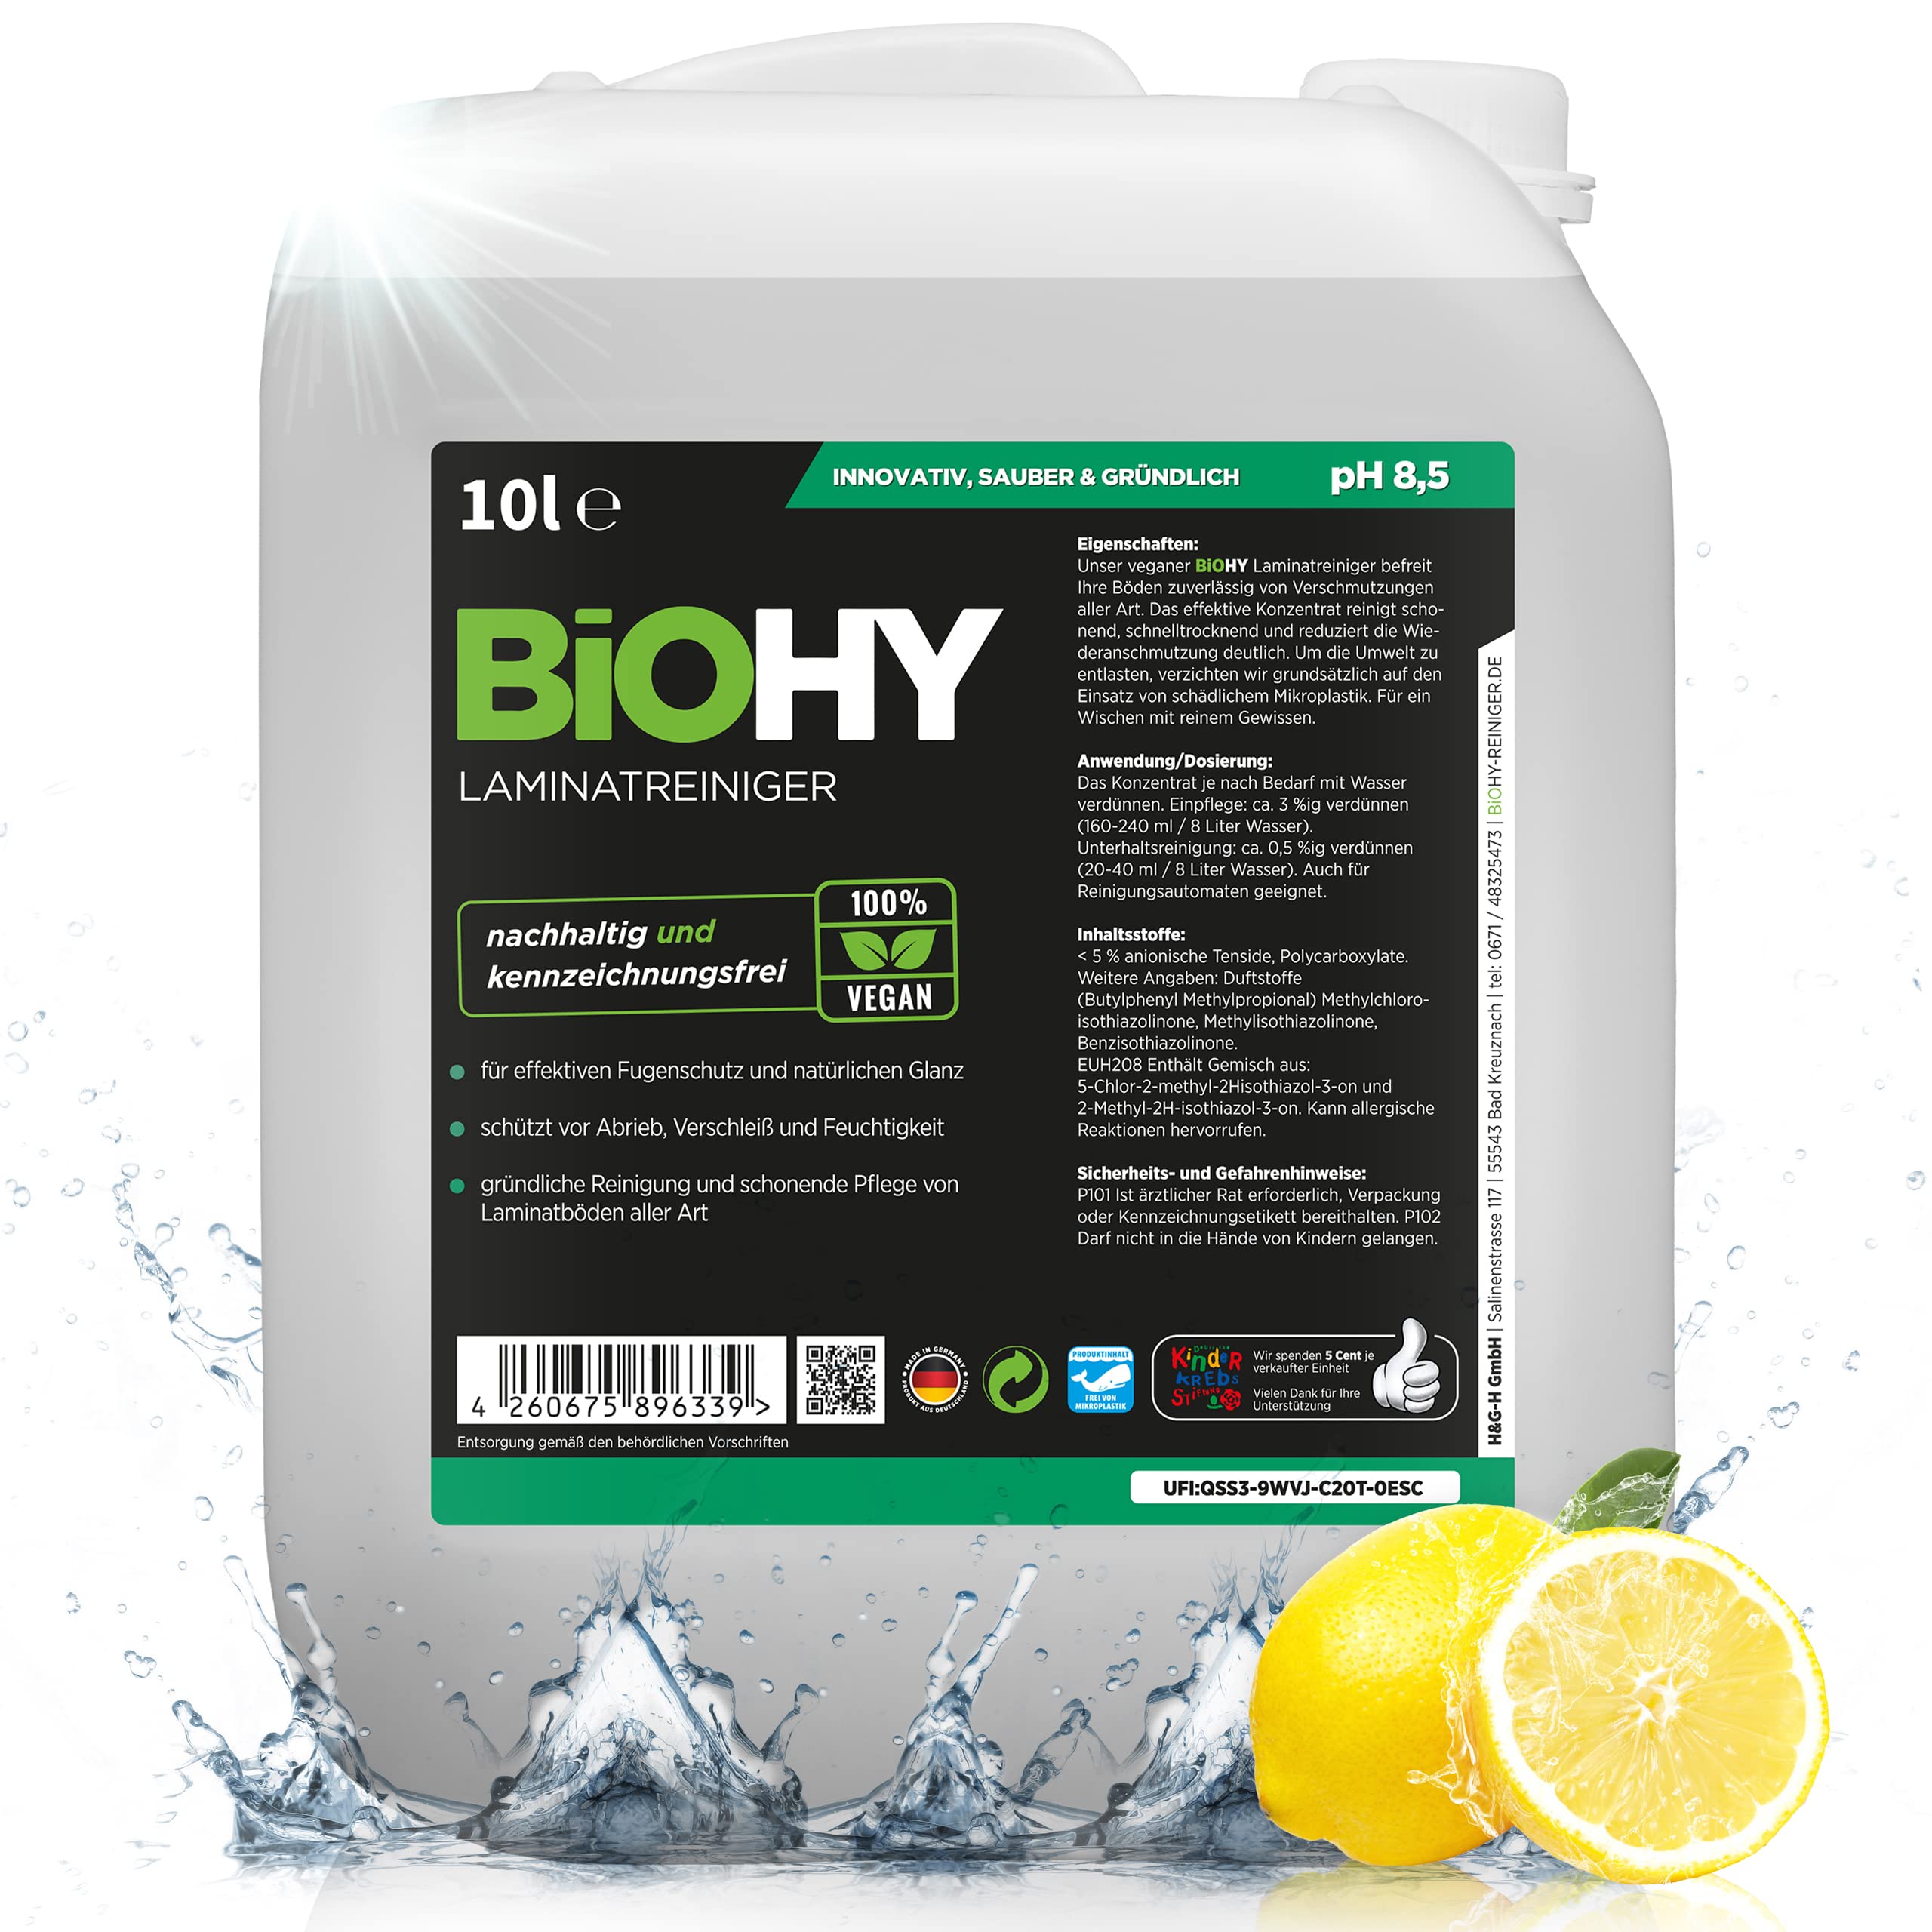 BiOHY Laminatreiniger (10 Liter Kanister) | 2 in 1 Laminatpflege & Reinigungsmittel | reinigt gründlich, schonend & reduziert Wiederverschmutzung | für eine streifenfreie Reinigung